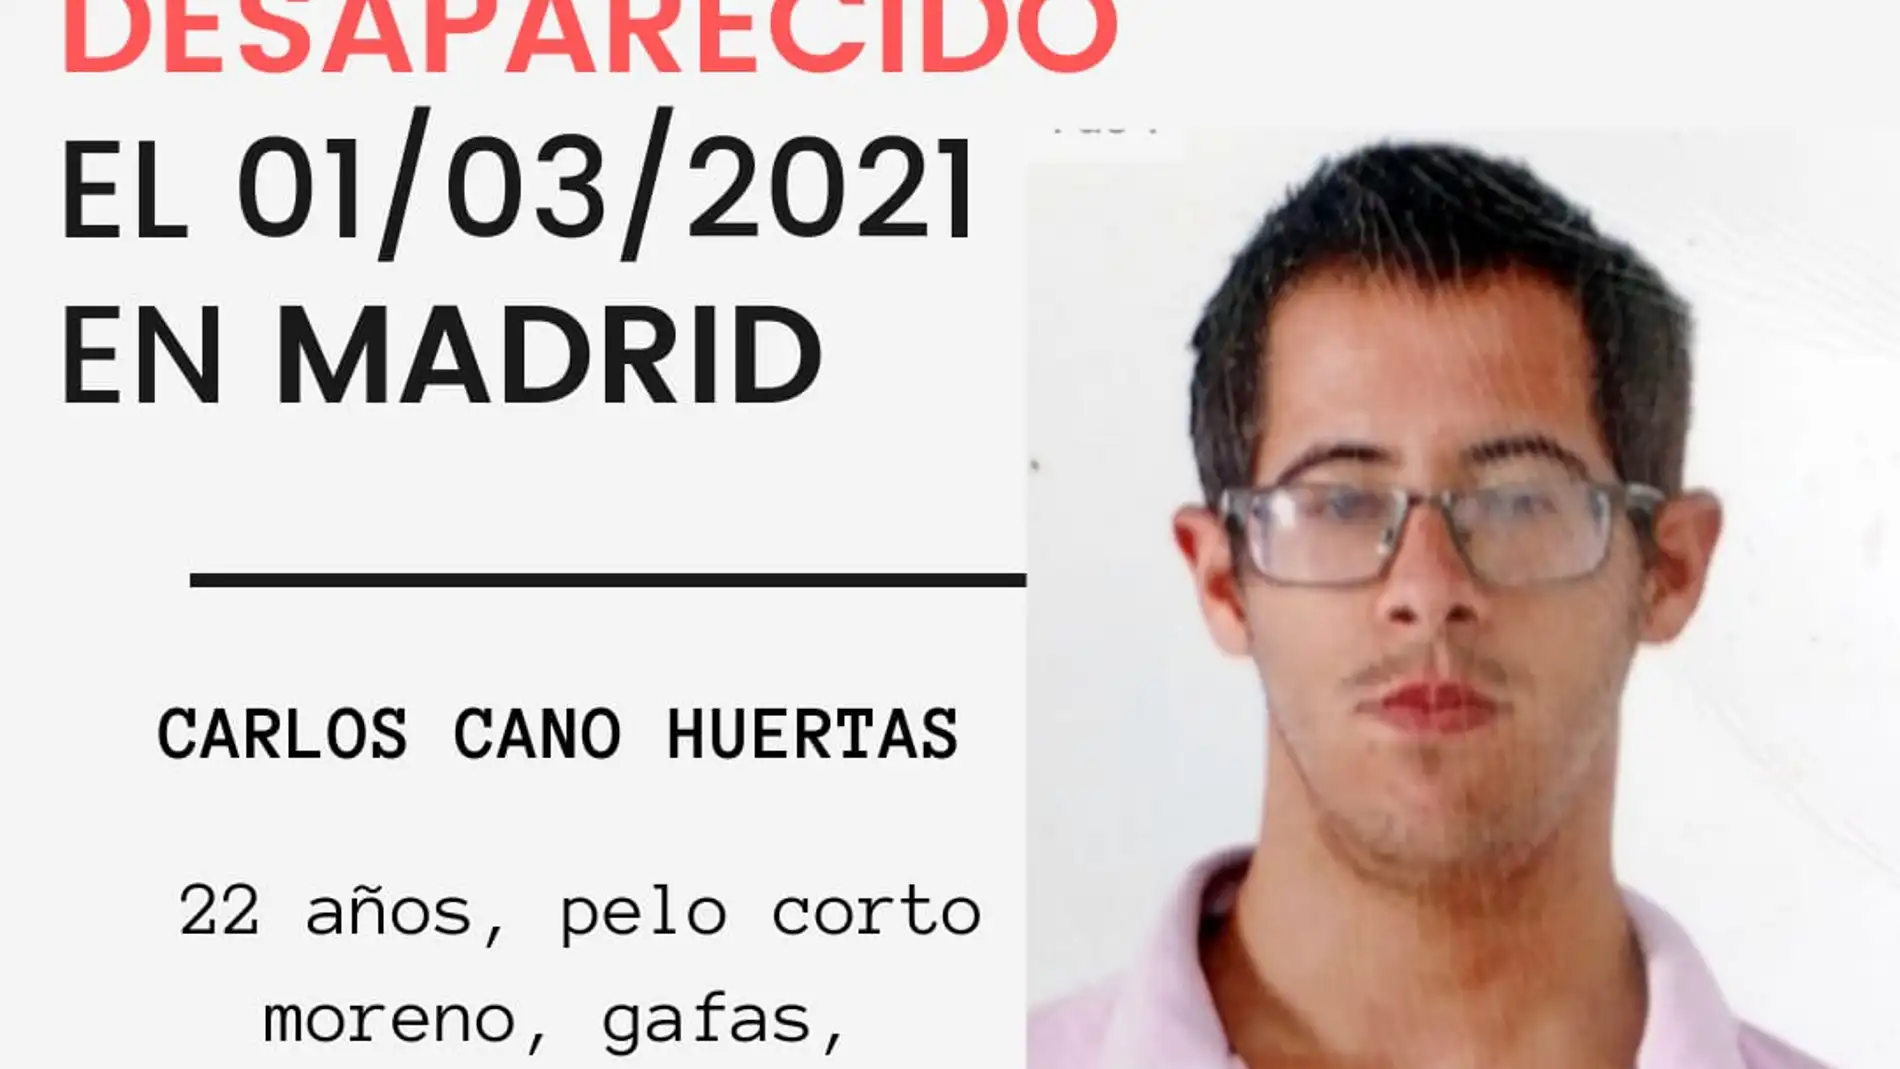 Desaparece un joven de 22 años con autismo en Madrid